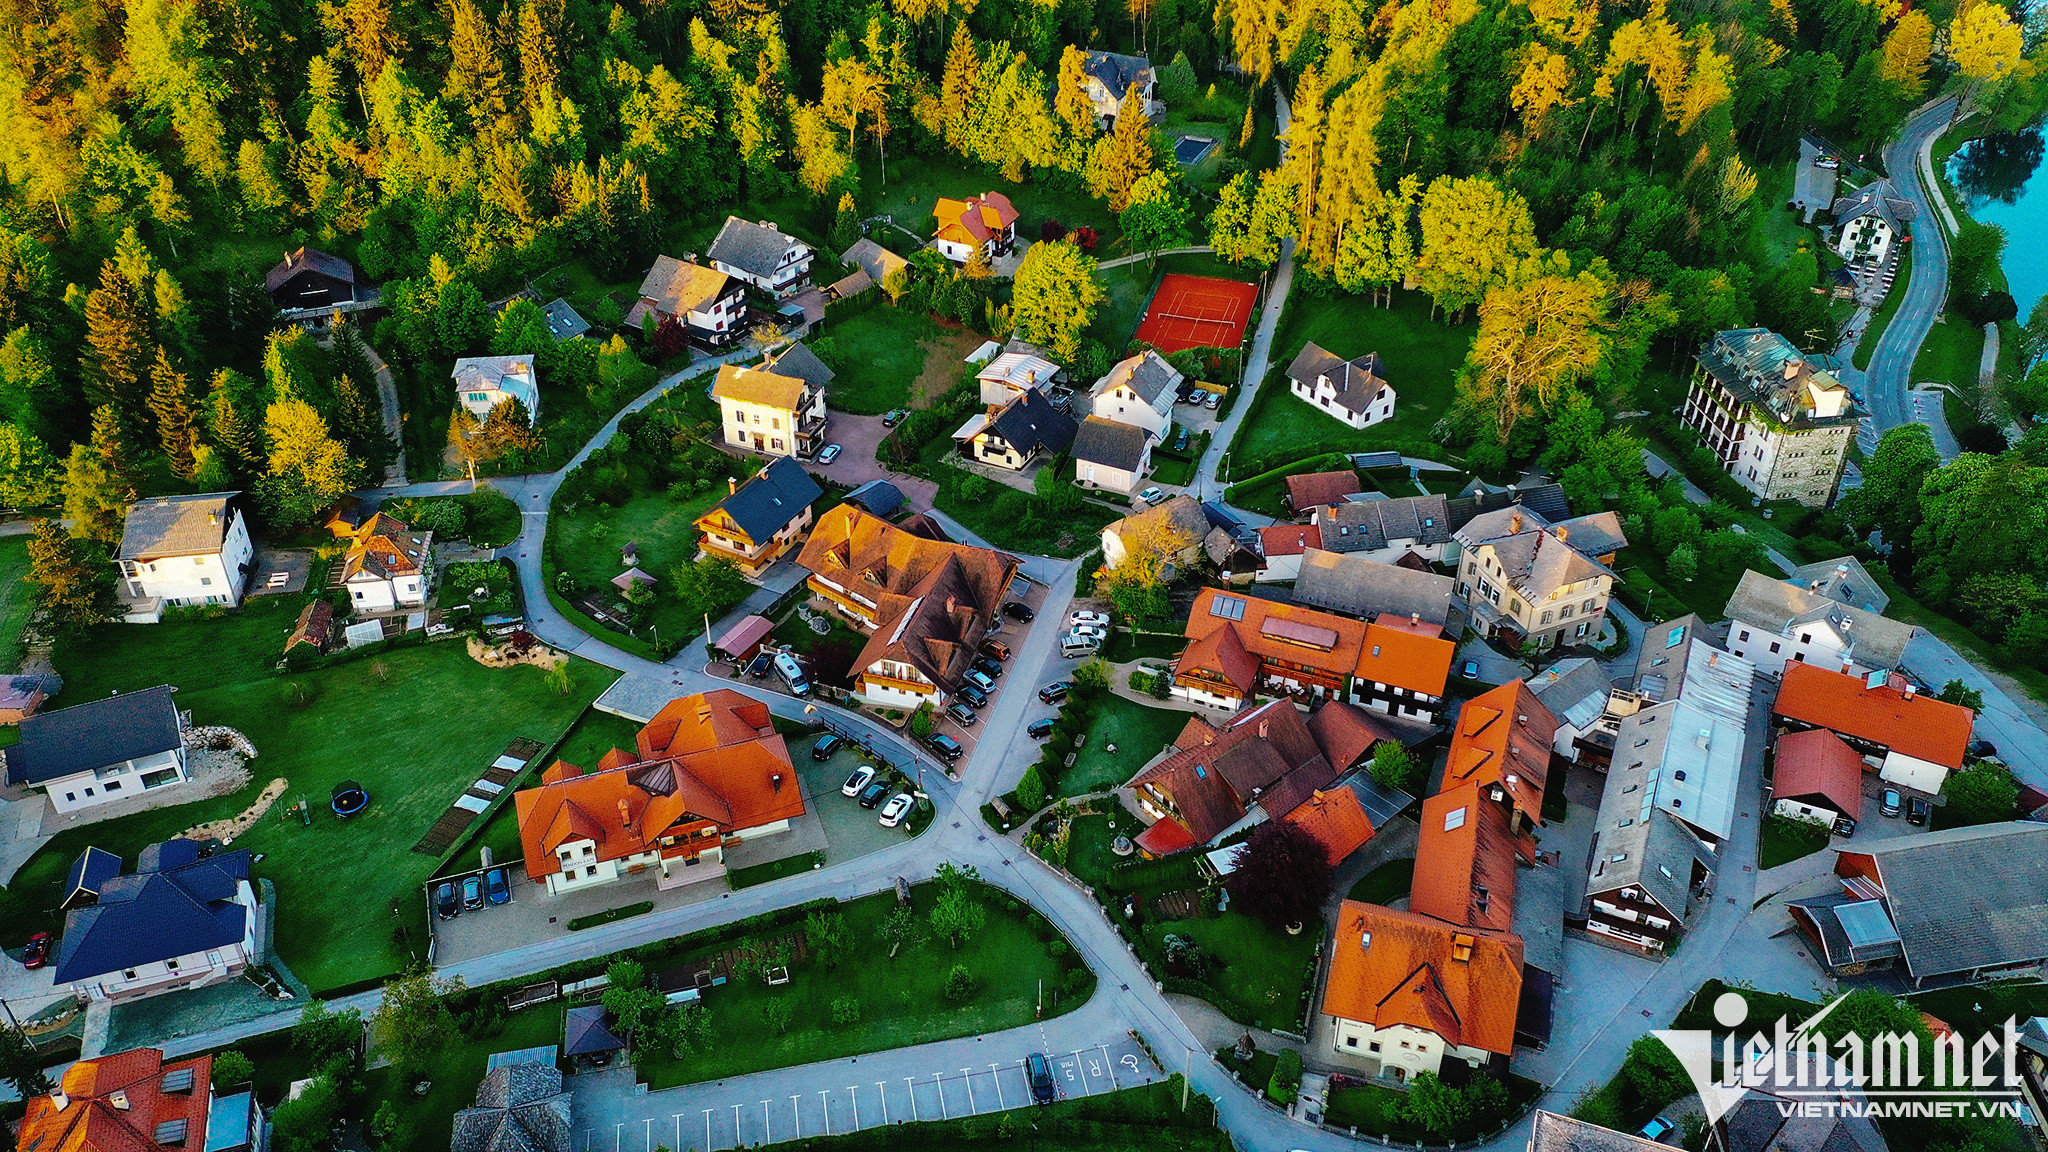 Mê mẩn với cảnh sắc thị trấn cổ Bled ở Slovenia